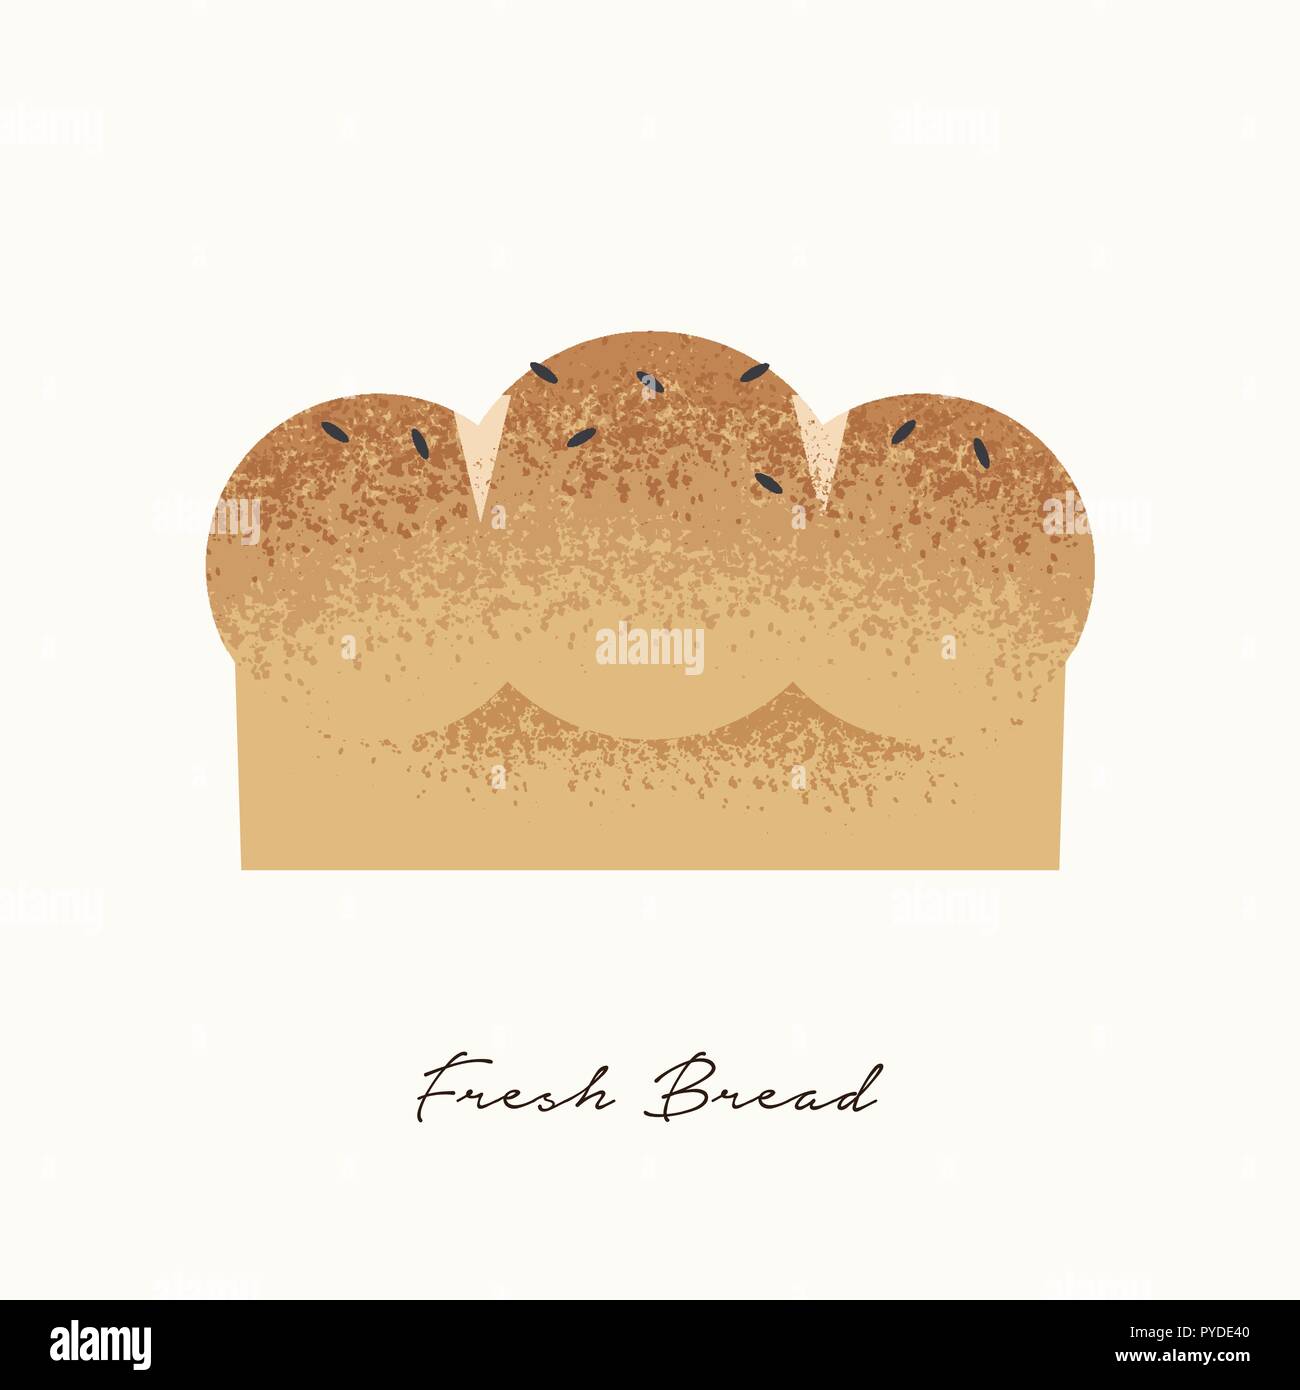 Frisches Brot Abbildung in Hand gezeichnet Textur Stil mit Samen für Bäckerei, gesunde Ernährung oder hausgemachte Speisen Konzept auf isolierten Hintergrund. Stock Vektor